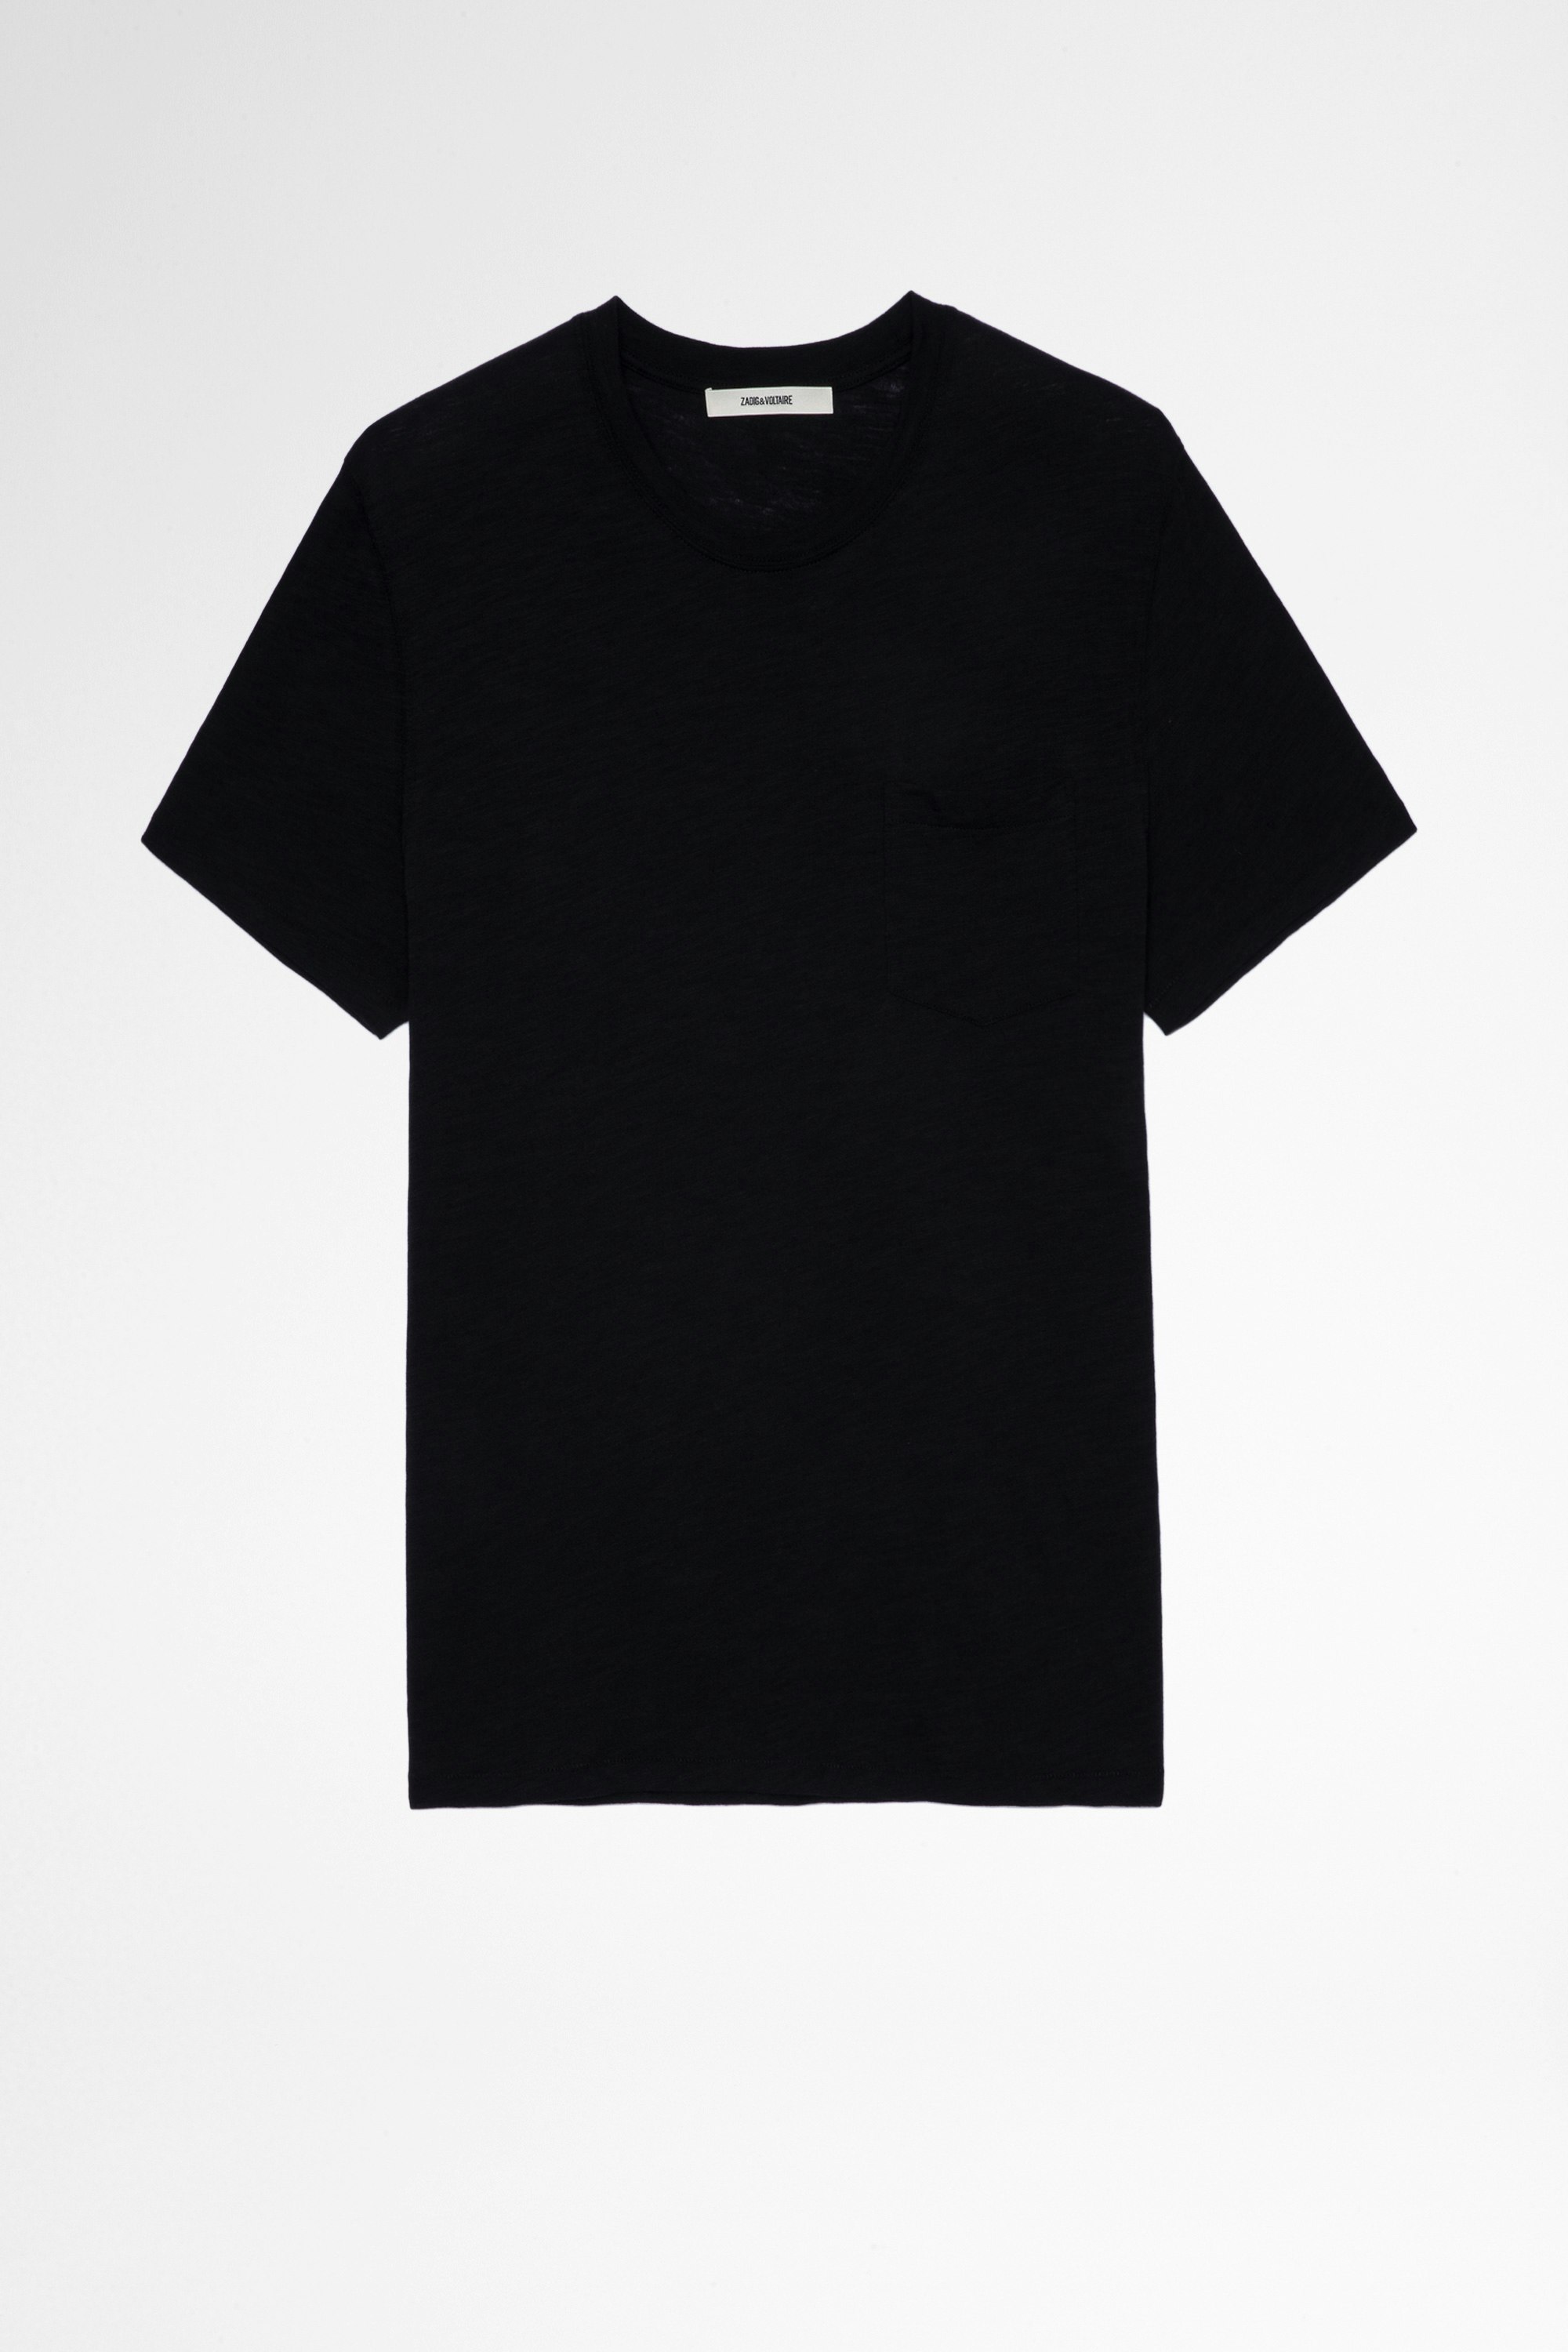 Camiseta Stockholm Camiseta de hombre de algodón negro con adorno de calaveras en la espalda. Confeccionado con fibras procedentes de la agricultura ecológica.